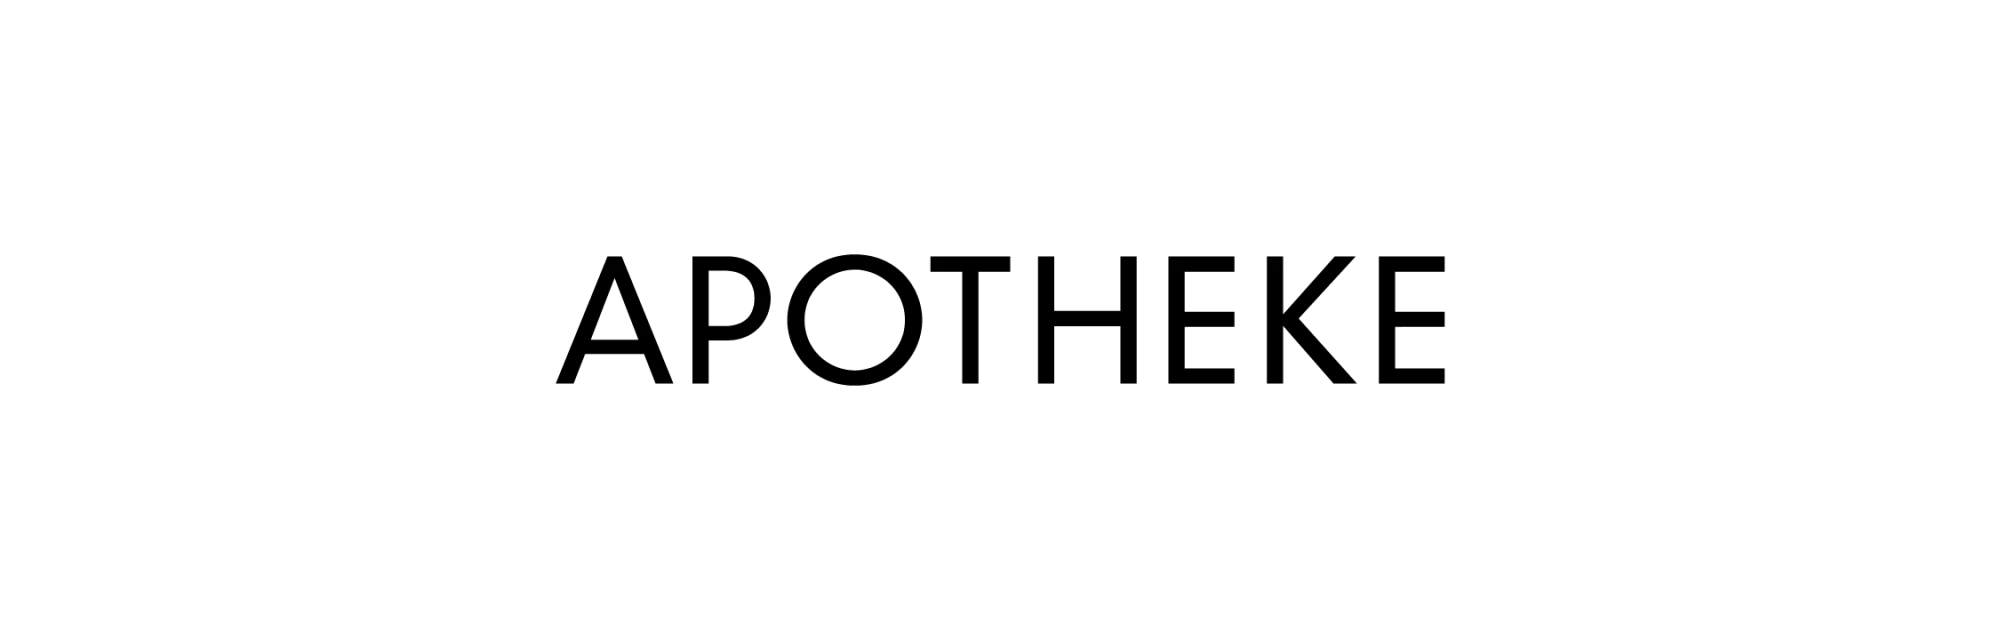 Apotheke mobile logo